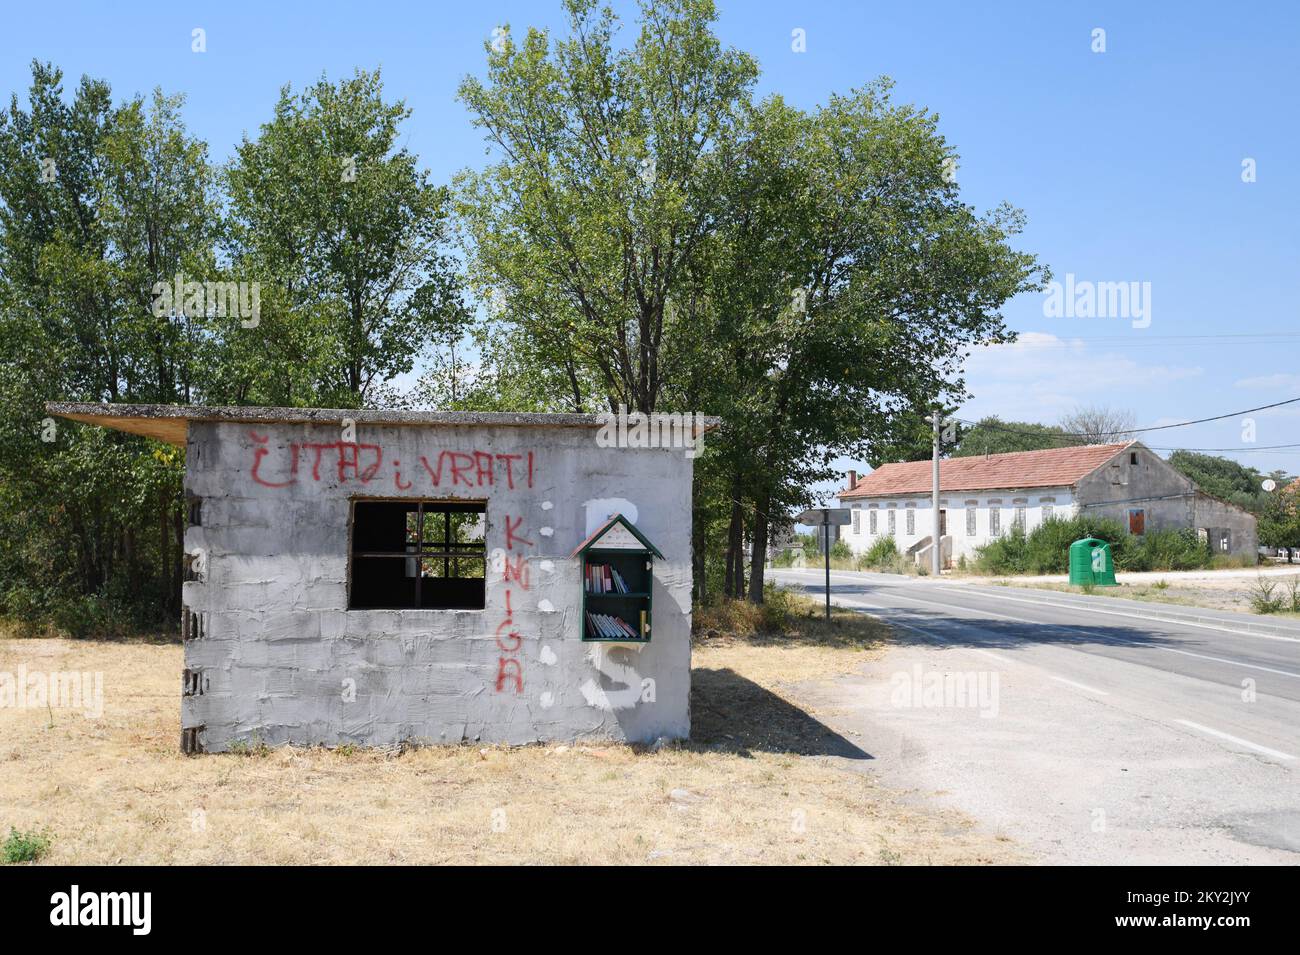 Una piccola biblioteca libera è montata in casa abbandonata nel villaggio di Razvodje vicino Sibenik, Croazia il 23 luglio 2022. La piccola biblioteca gratuita è un progetto per incoraggiare i locali e i turisti a leggere più libri. Foto: Hrvoje Jelavic/PIXSELL Foto Stock